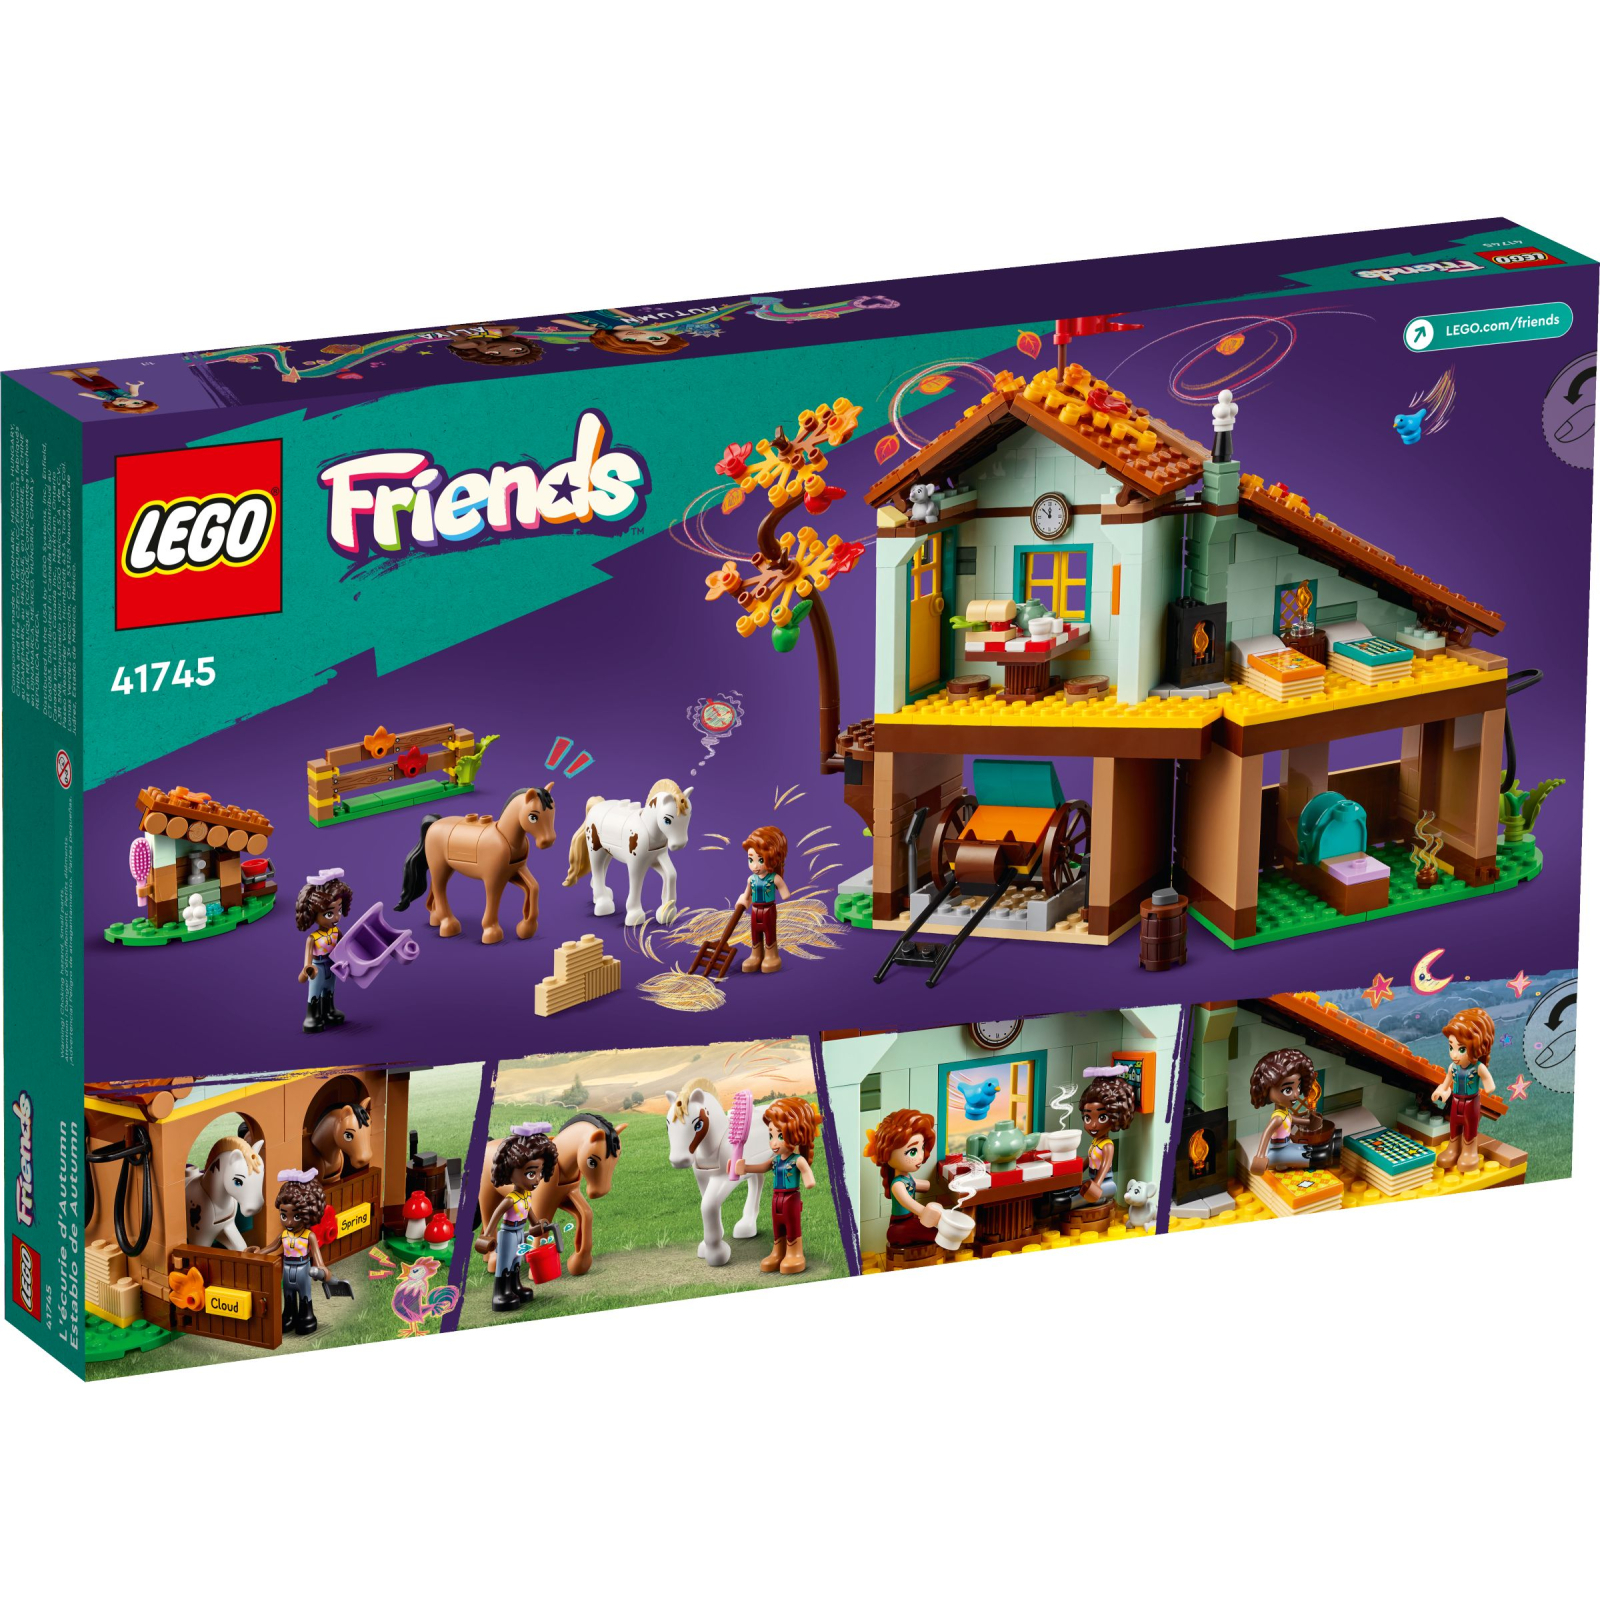 Конструктор LEGO Friends Конюшня Отом 545 деталей (41745) изображение 10